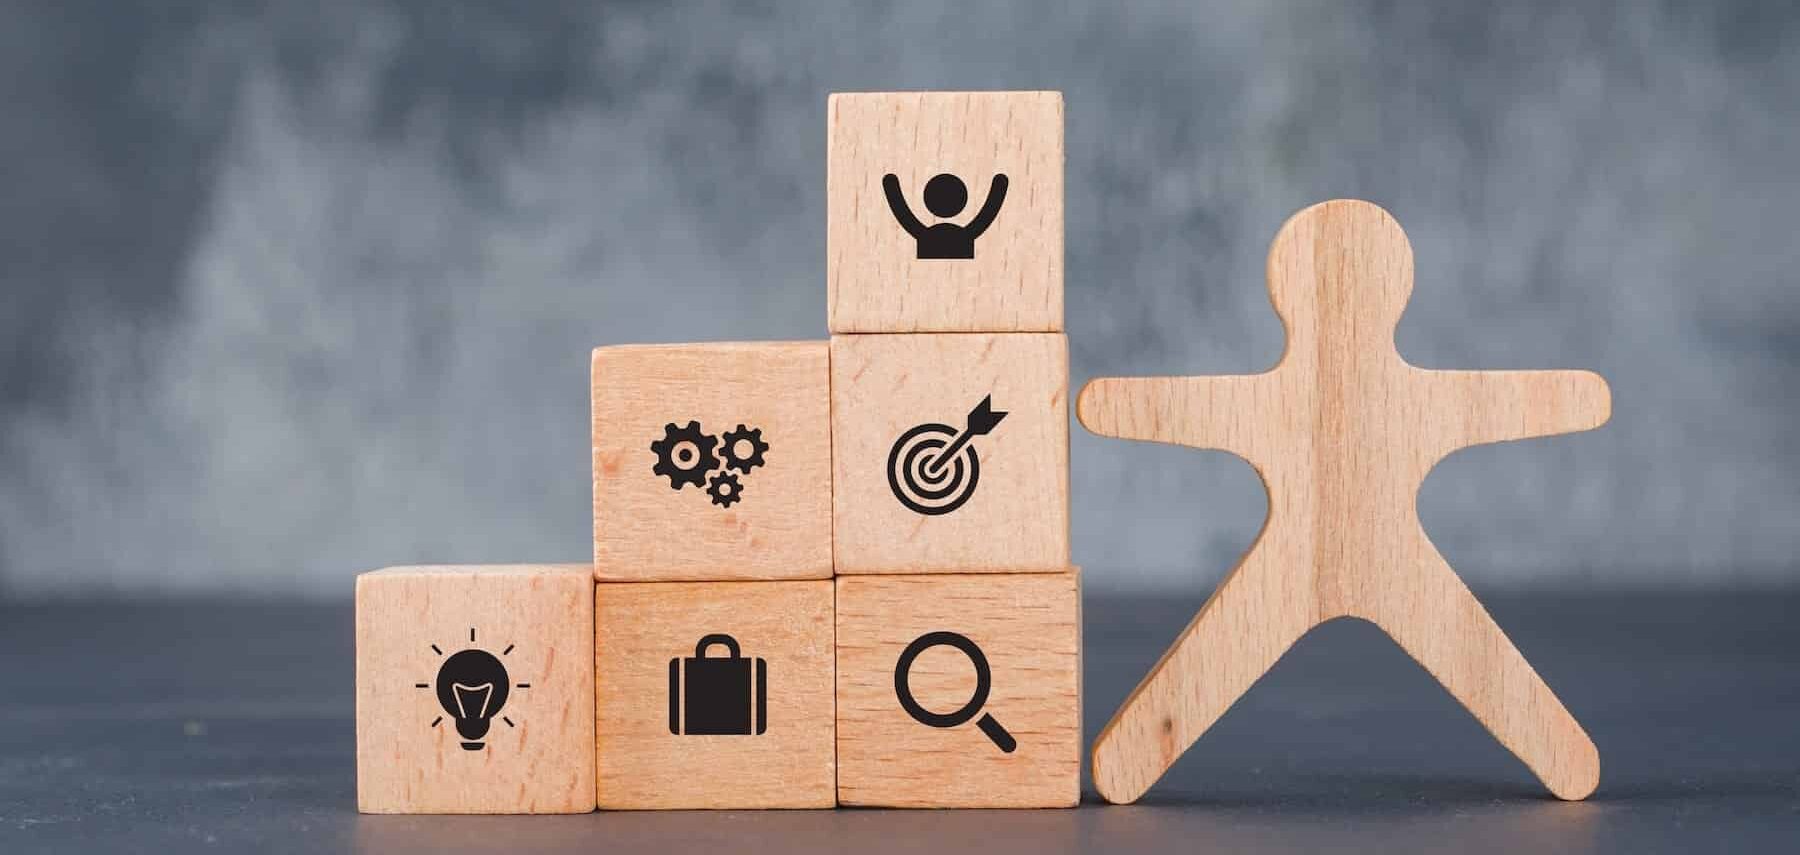 il bilancio di competenze: giochi in legno a forma di persone e blocchi con icone relative alla crescita e alla soddisfazione personale e lavorativa